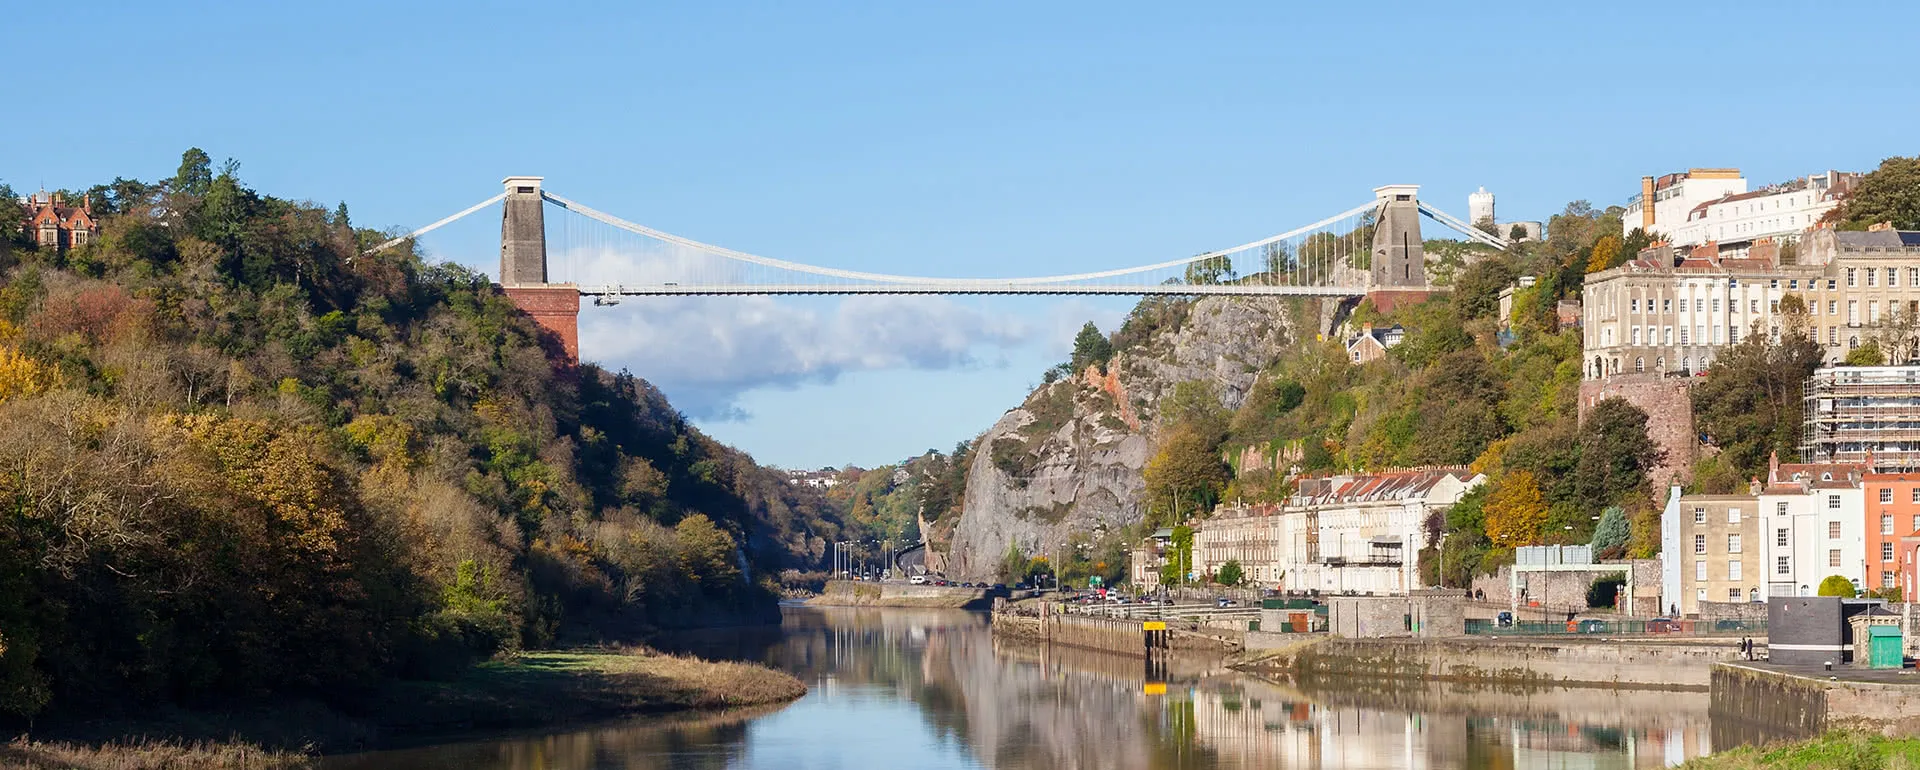 Bristol - the destination for company trips